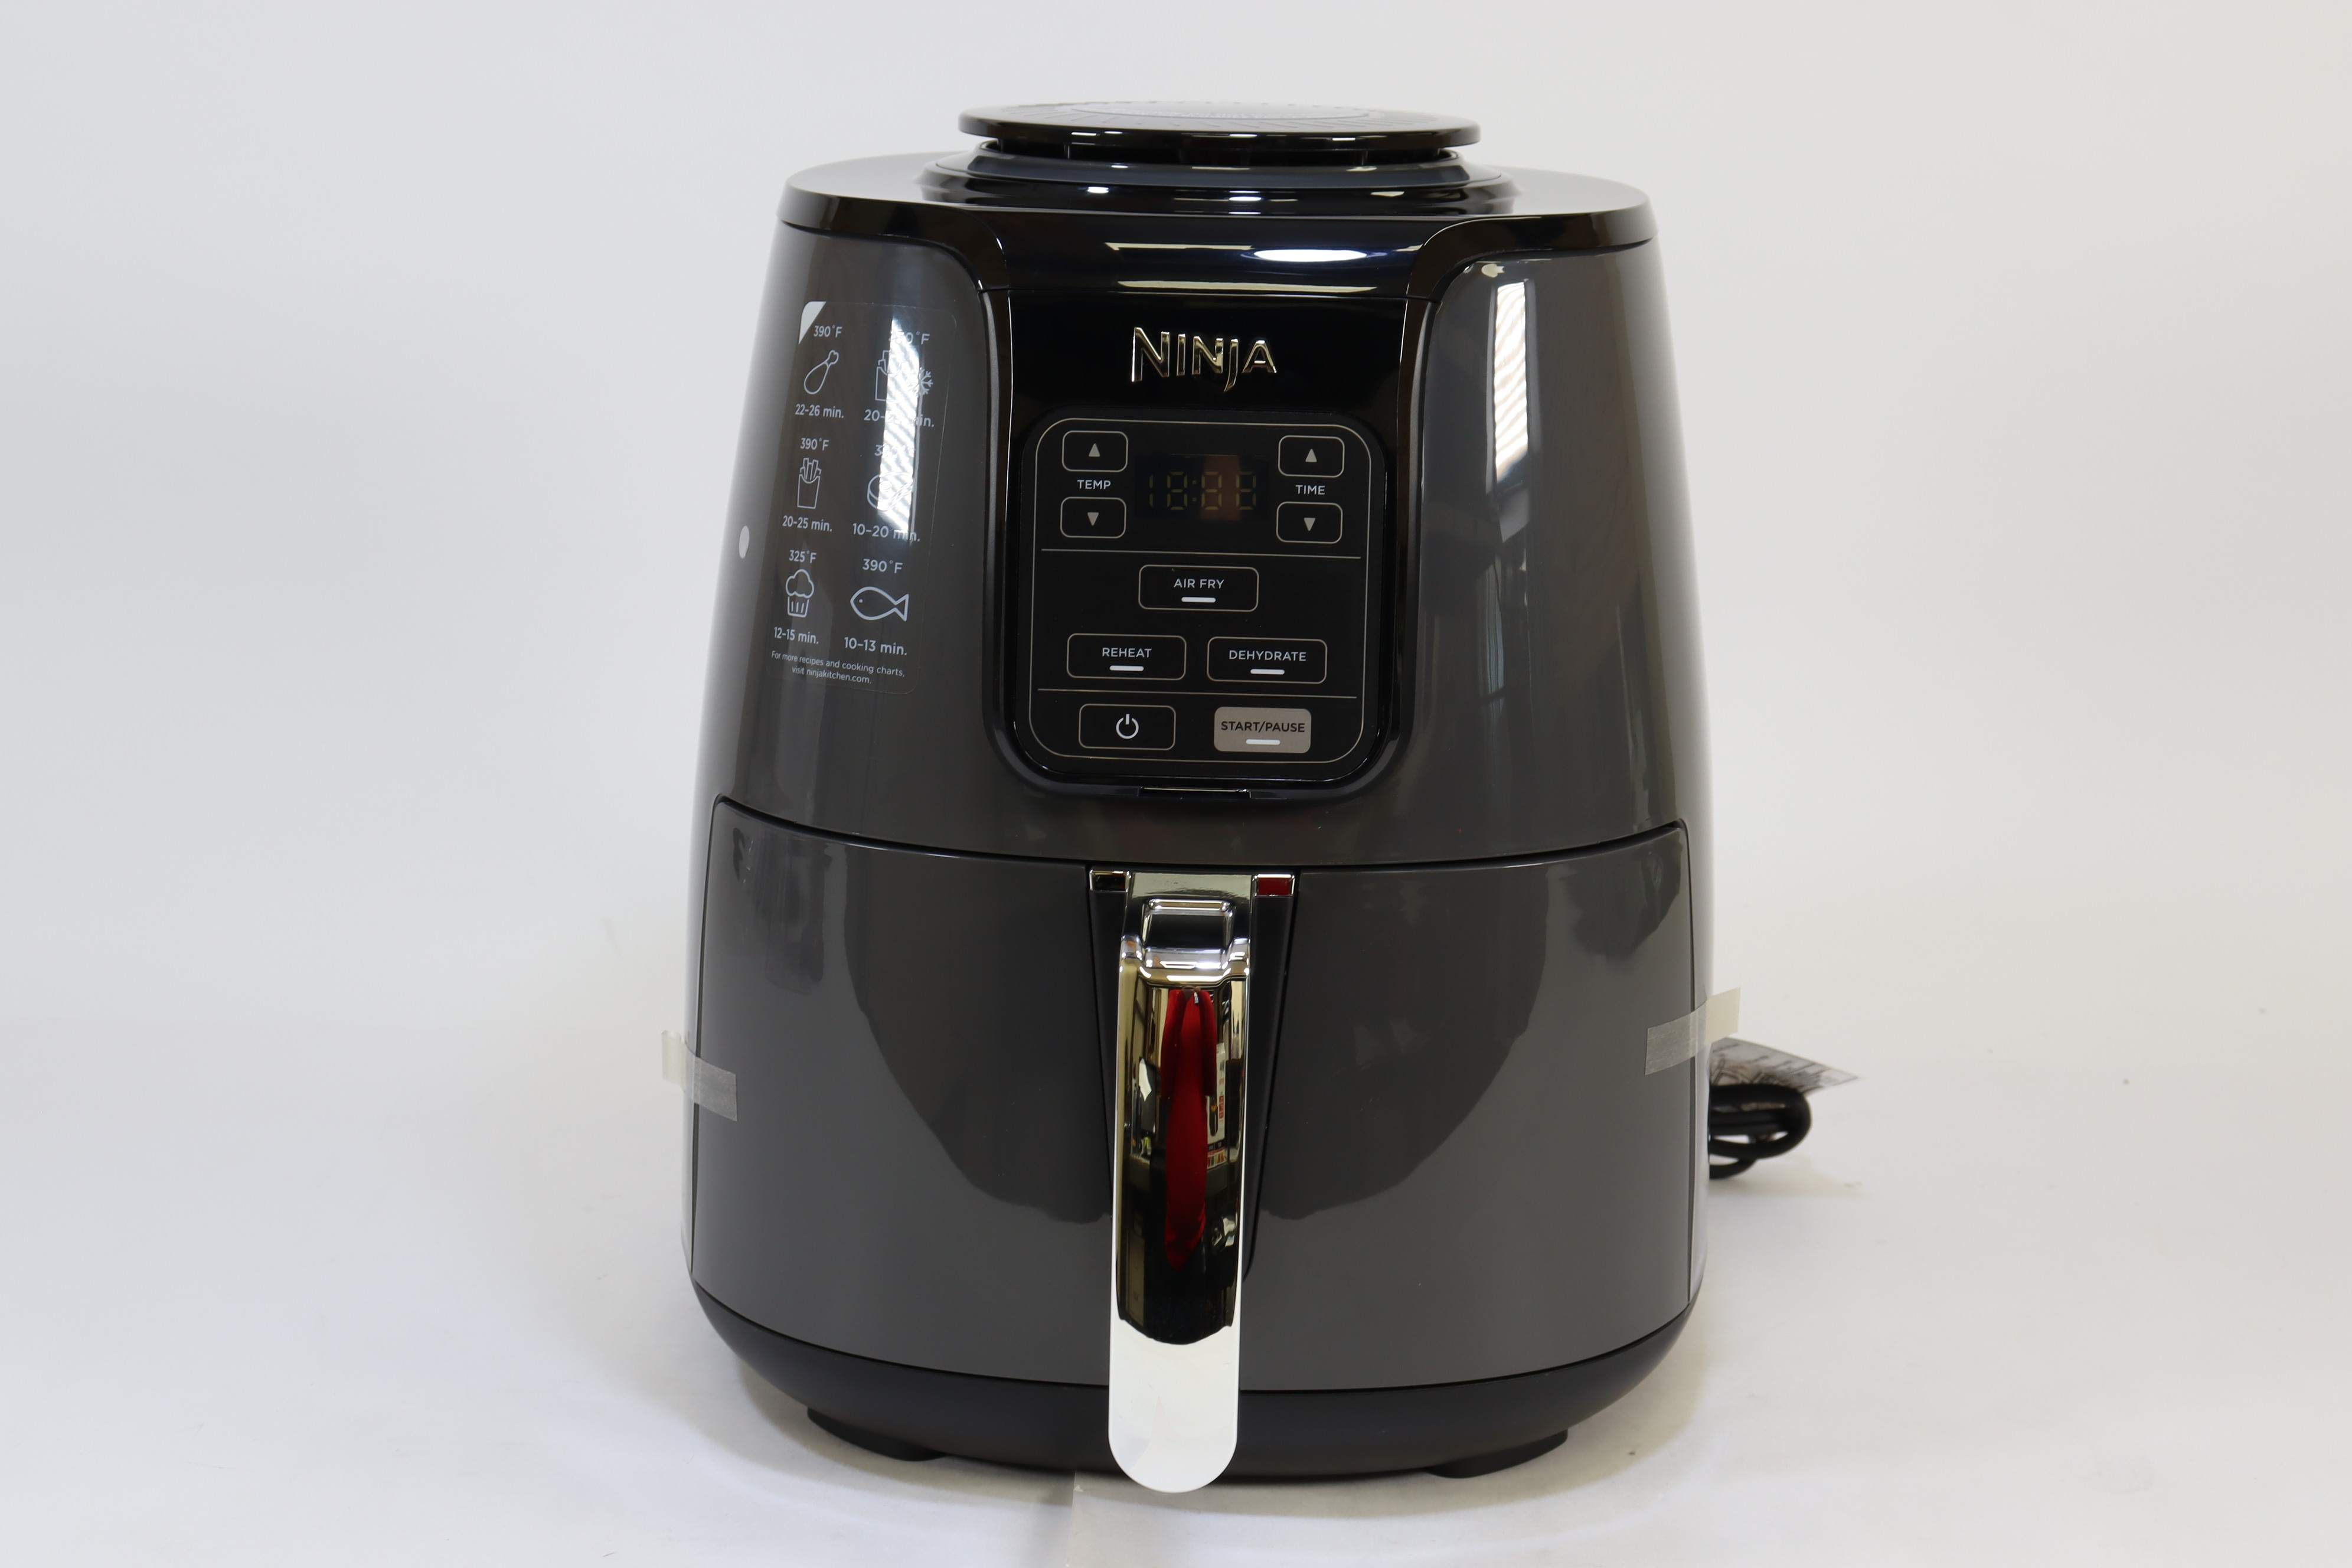 Ninja 1550W Air Fryer